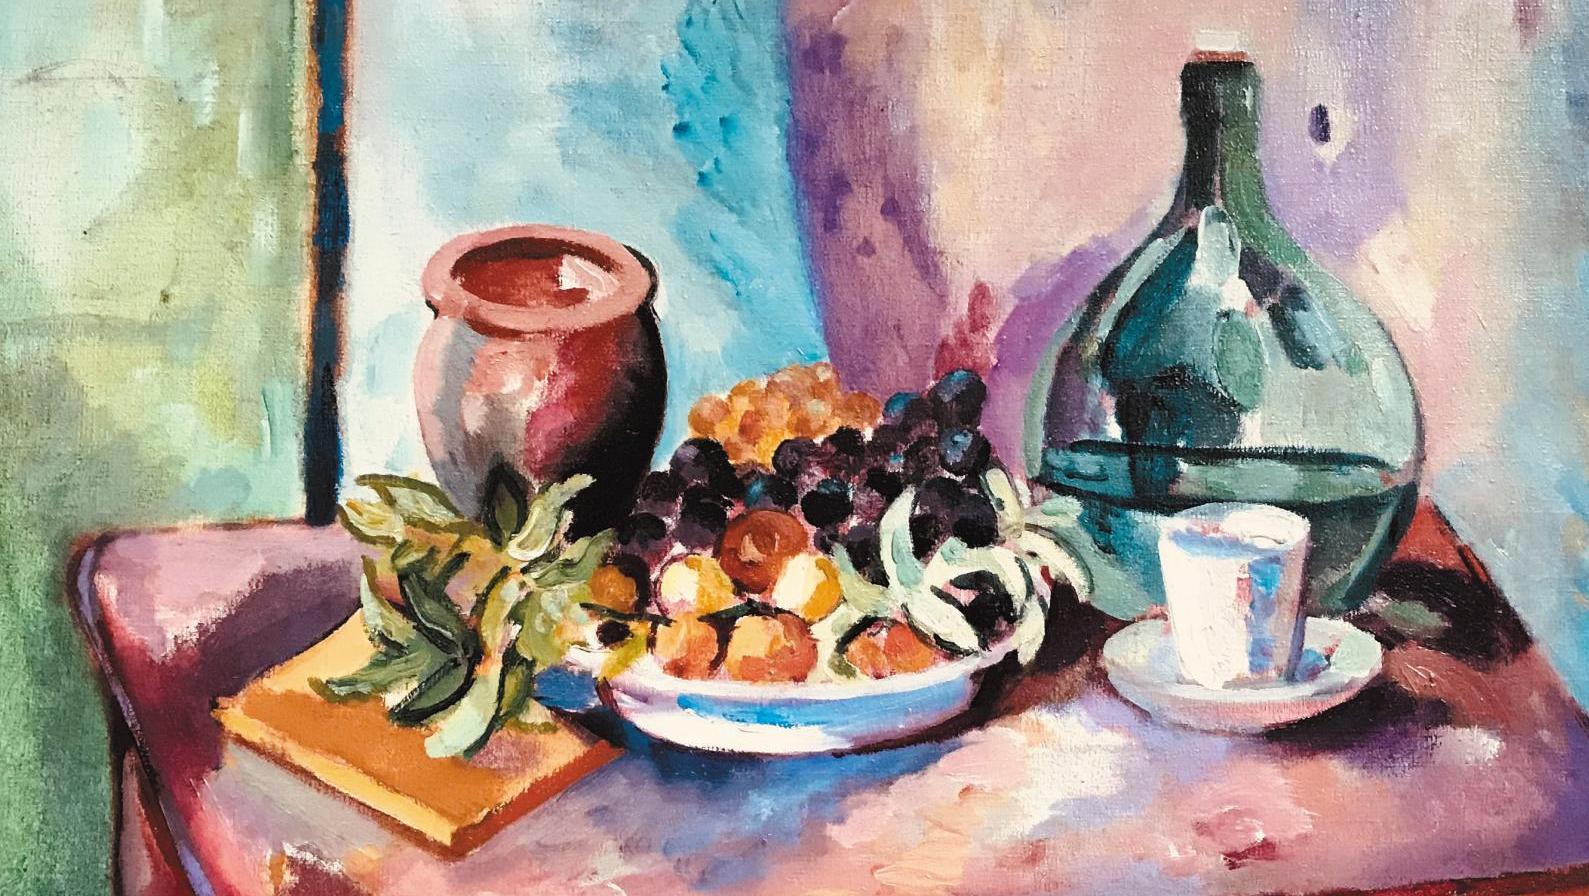 Henri Charles Manguin (1874-1949), Raisins et arbouses, 1919, huile sur toile, 54 x 65 cm.... Des fruits juteux à souhait